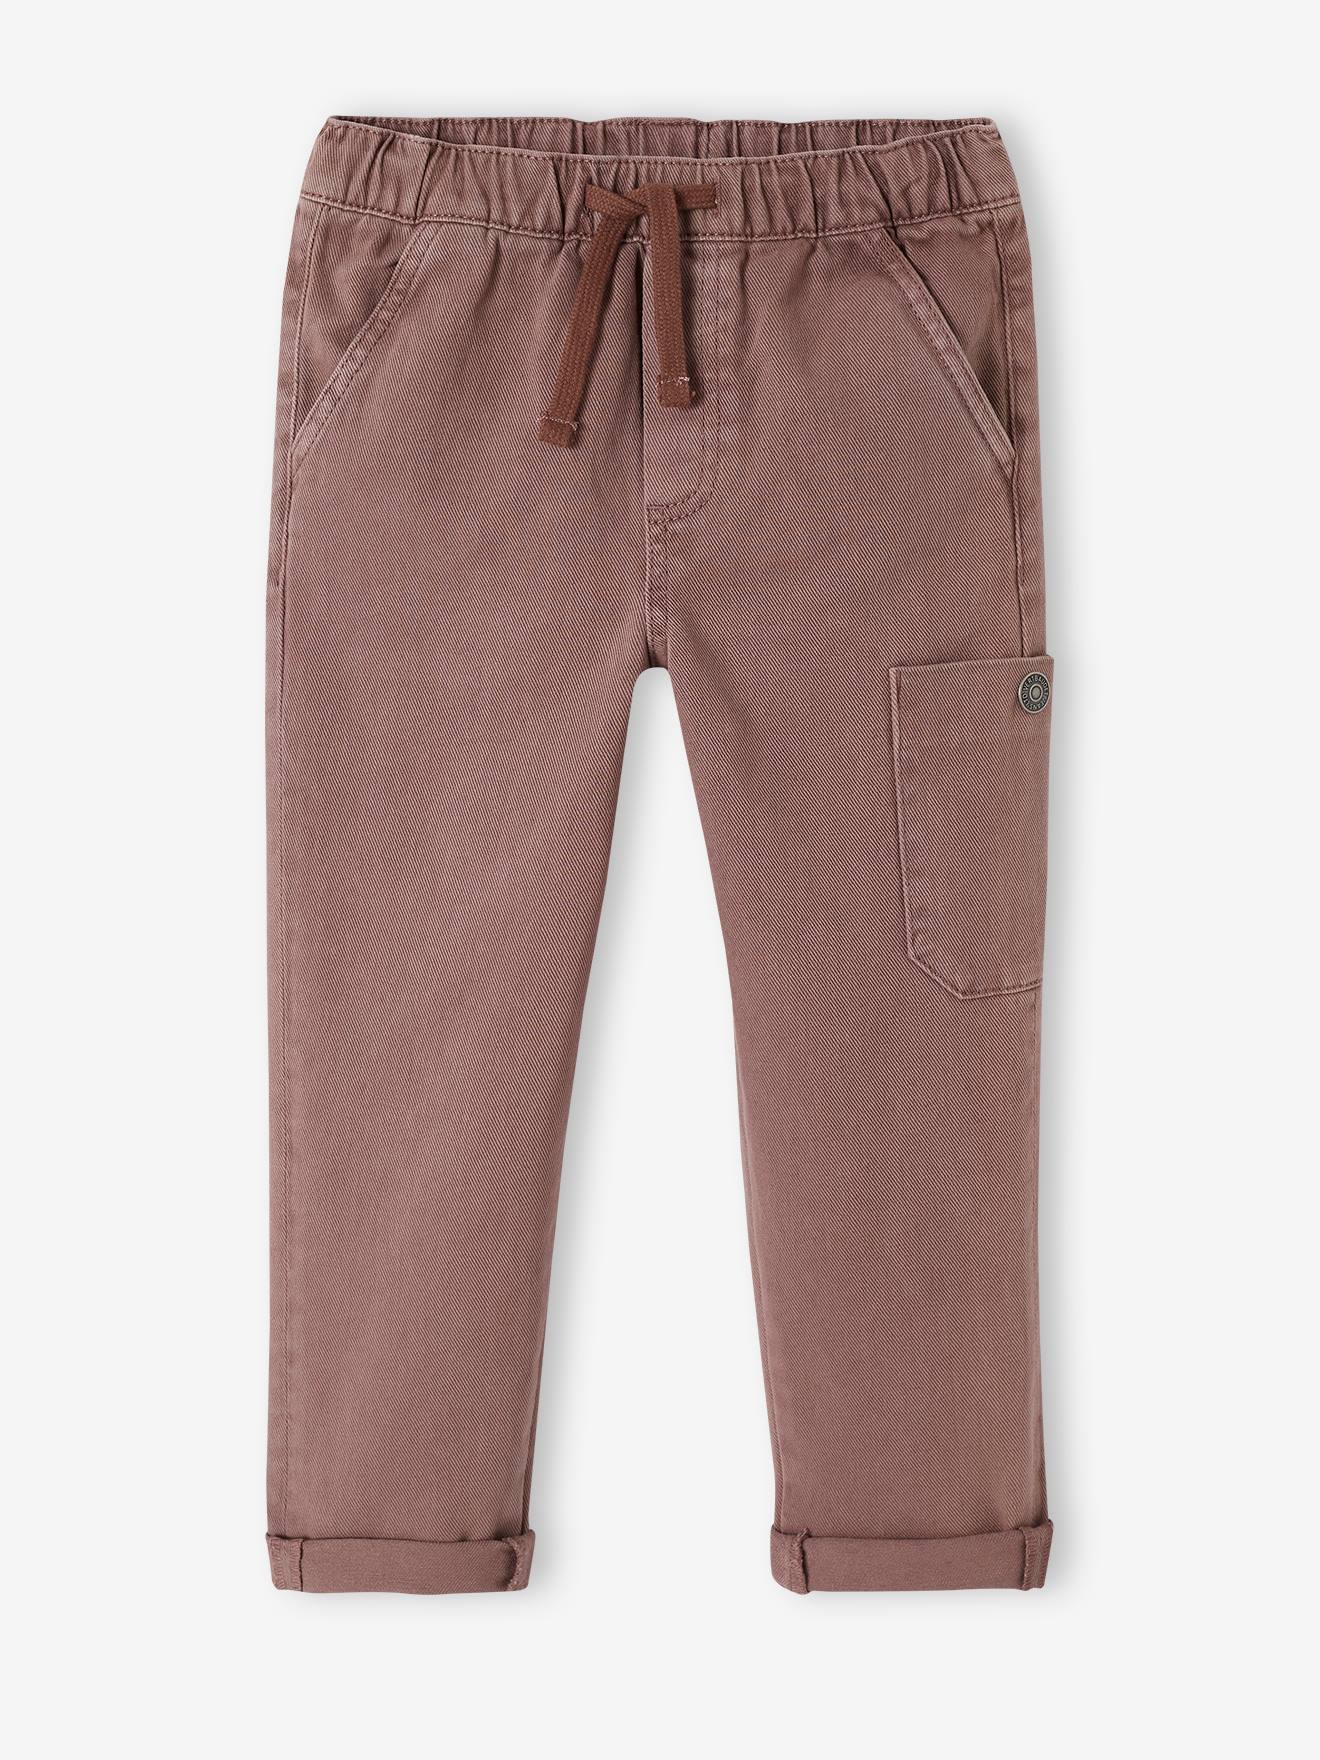 pantalon cargo couleur garçon chocolat